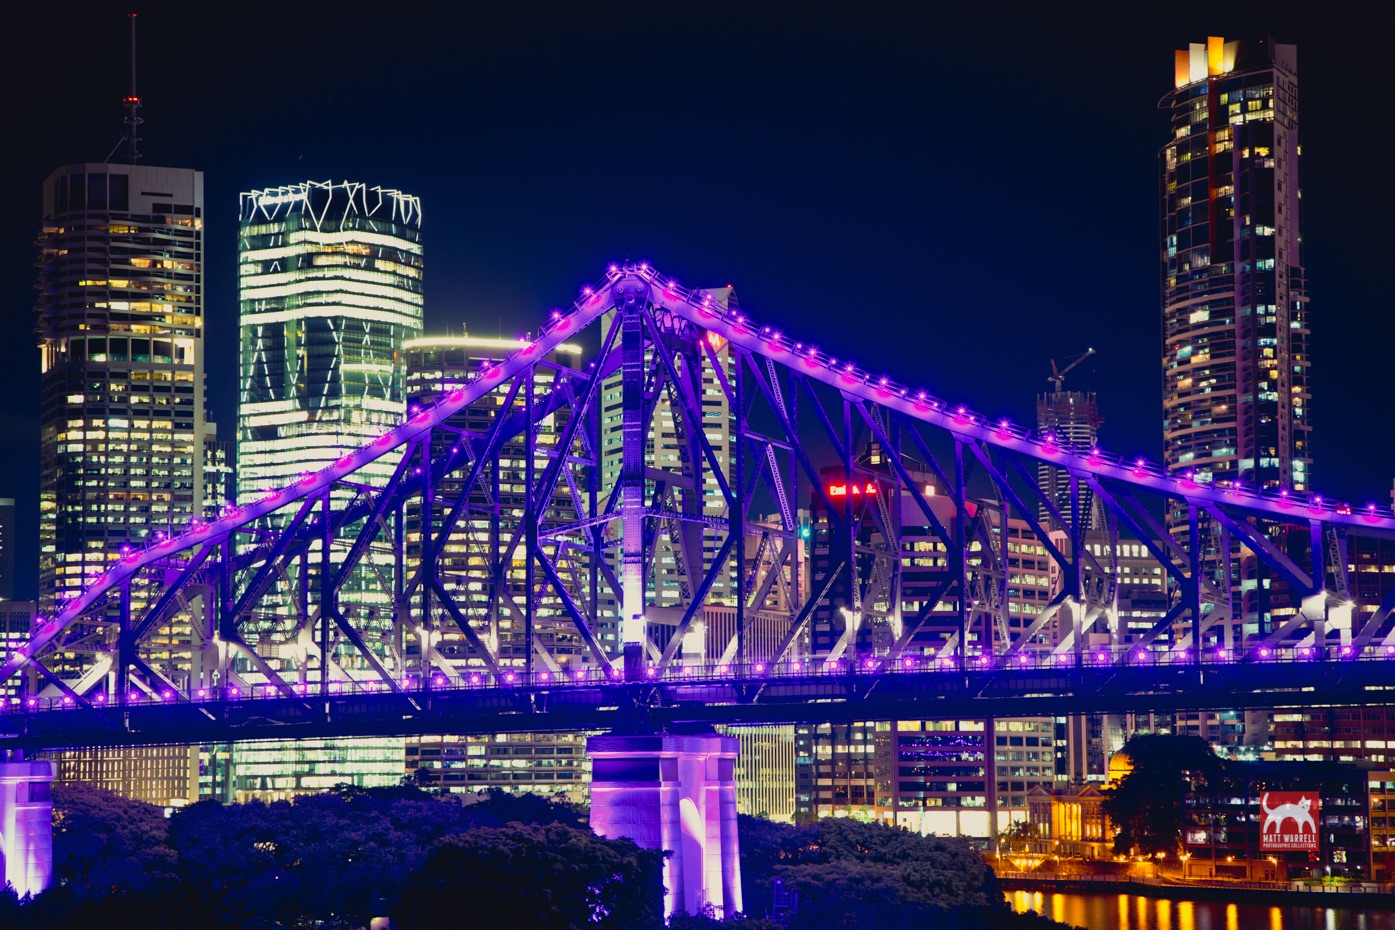 Story Bridge lights turn on purple